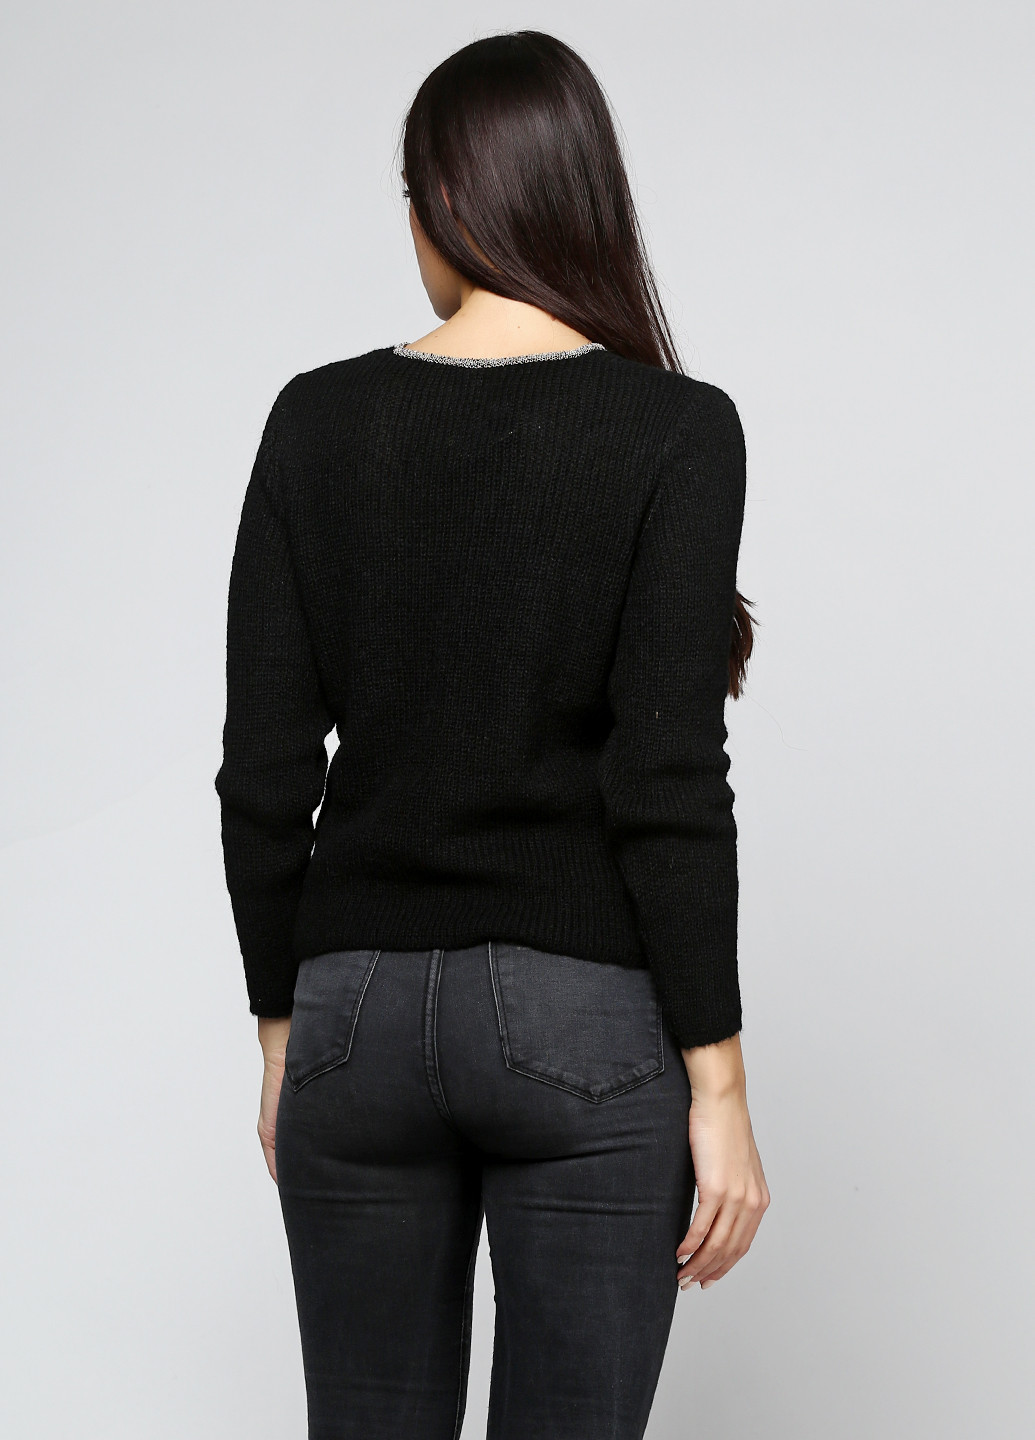 Черный демисезонный пуловер пуловер Folgore Milano